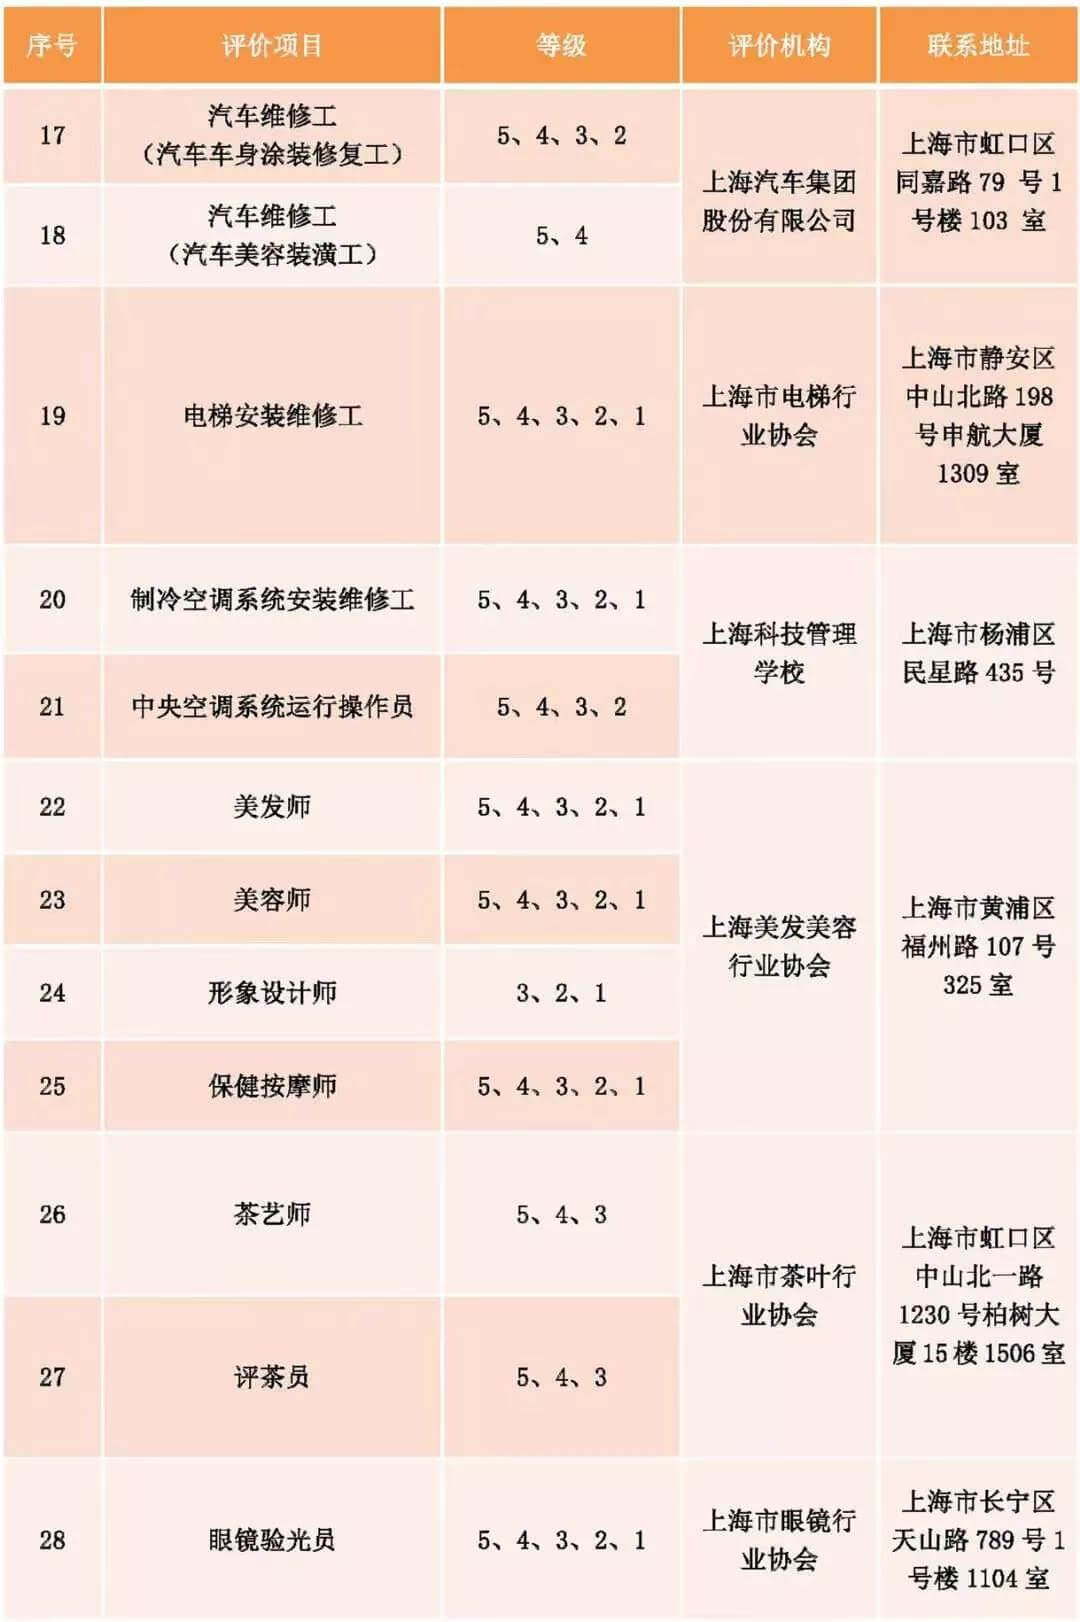 上海发布社会化职业技能评价目录！25个专项停止考试！不再发证书！